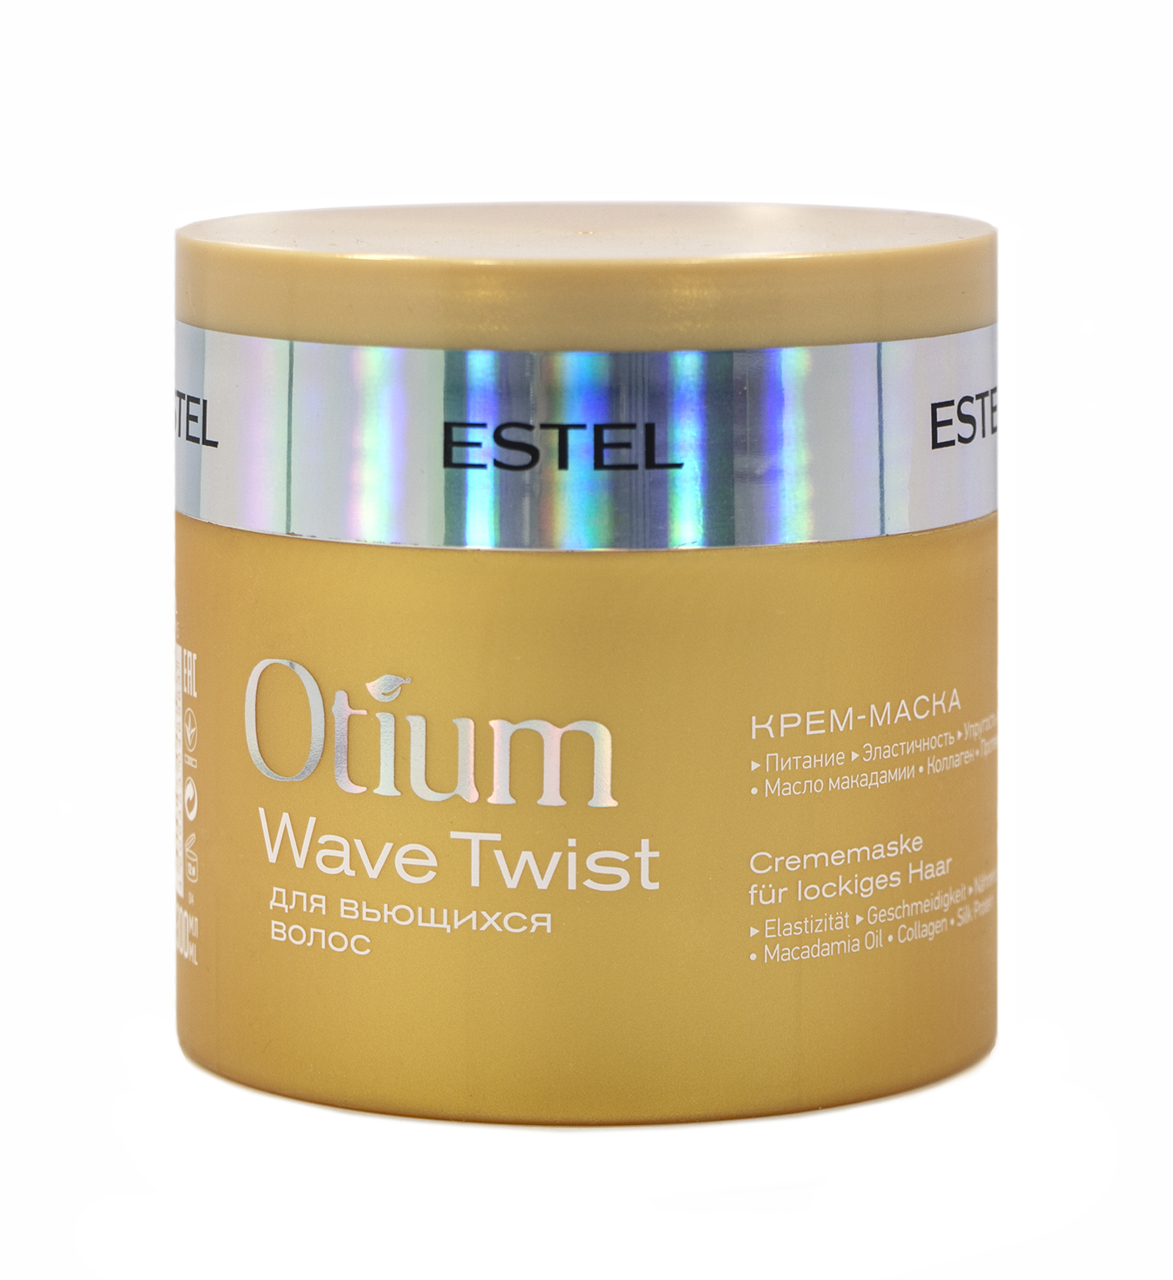 Otium маска для волос. Шампунь (крем-шампунь) Estel Otium Wave Twist для вьющихся волос. Маска Эстель отиум для вьющихся волос. Маска Эстель отиум для кудрявых. Estel маска увлажняющая Otium.